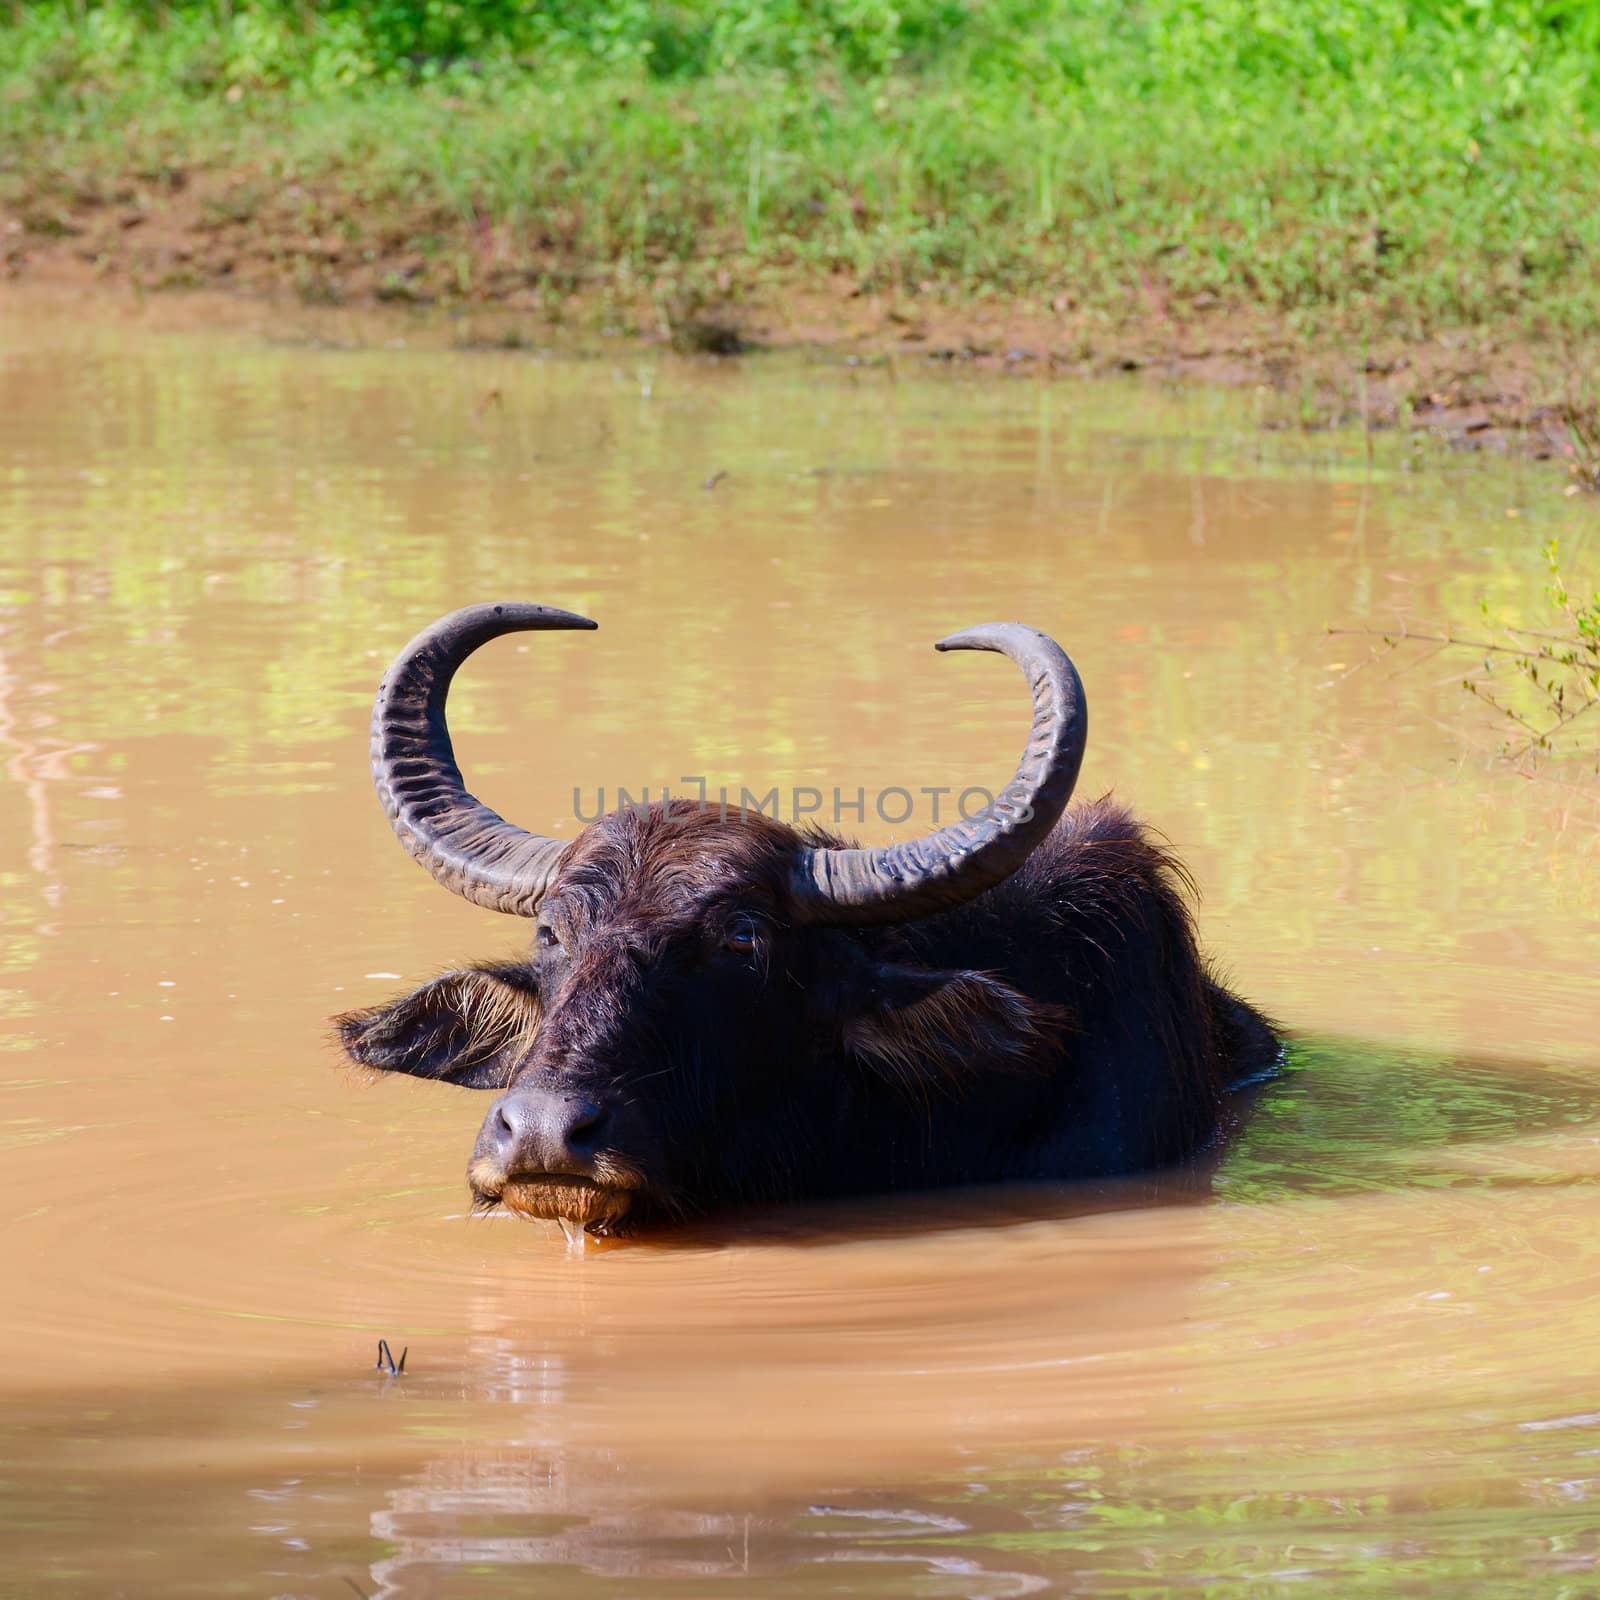 Water Buffalo (Bubalus bubalis) takes a bath in mud water, Sri Lanka